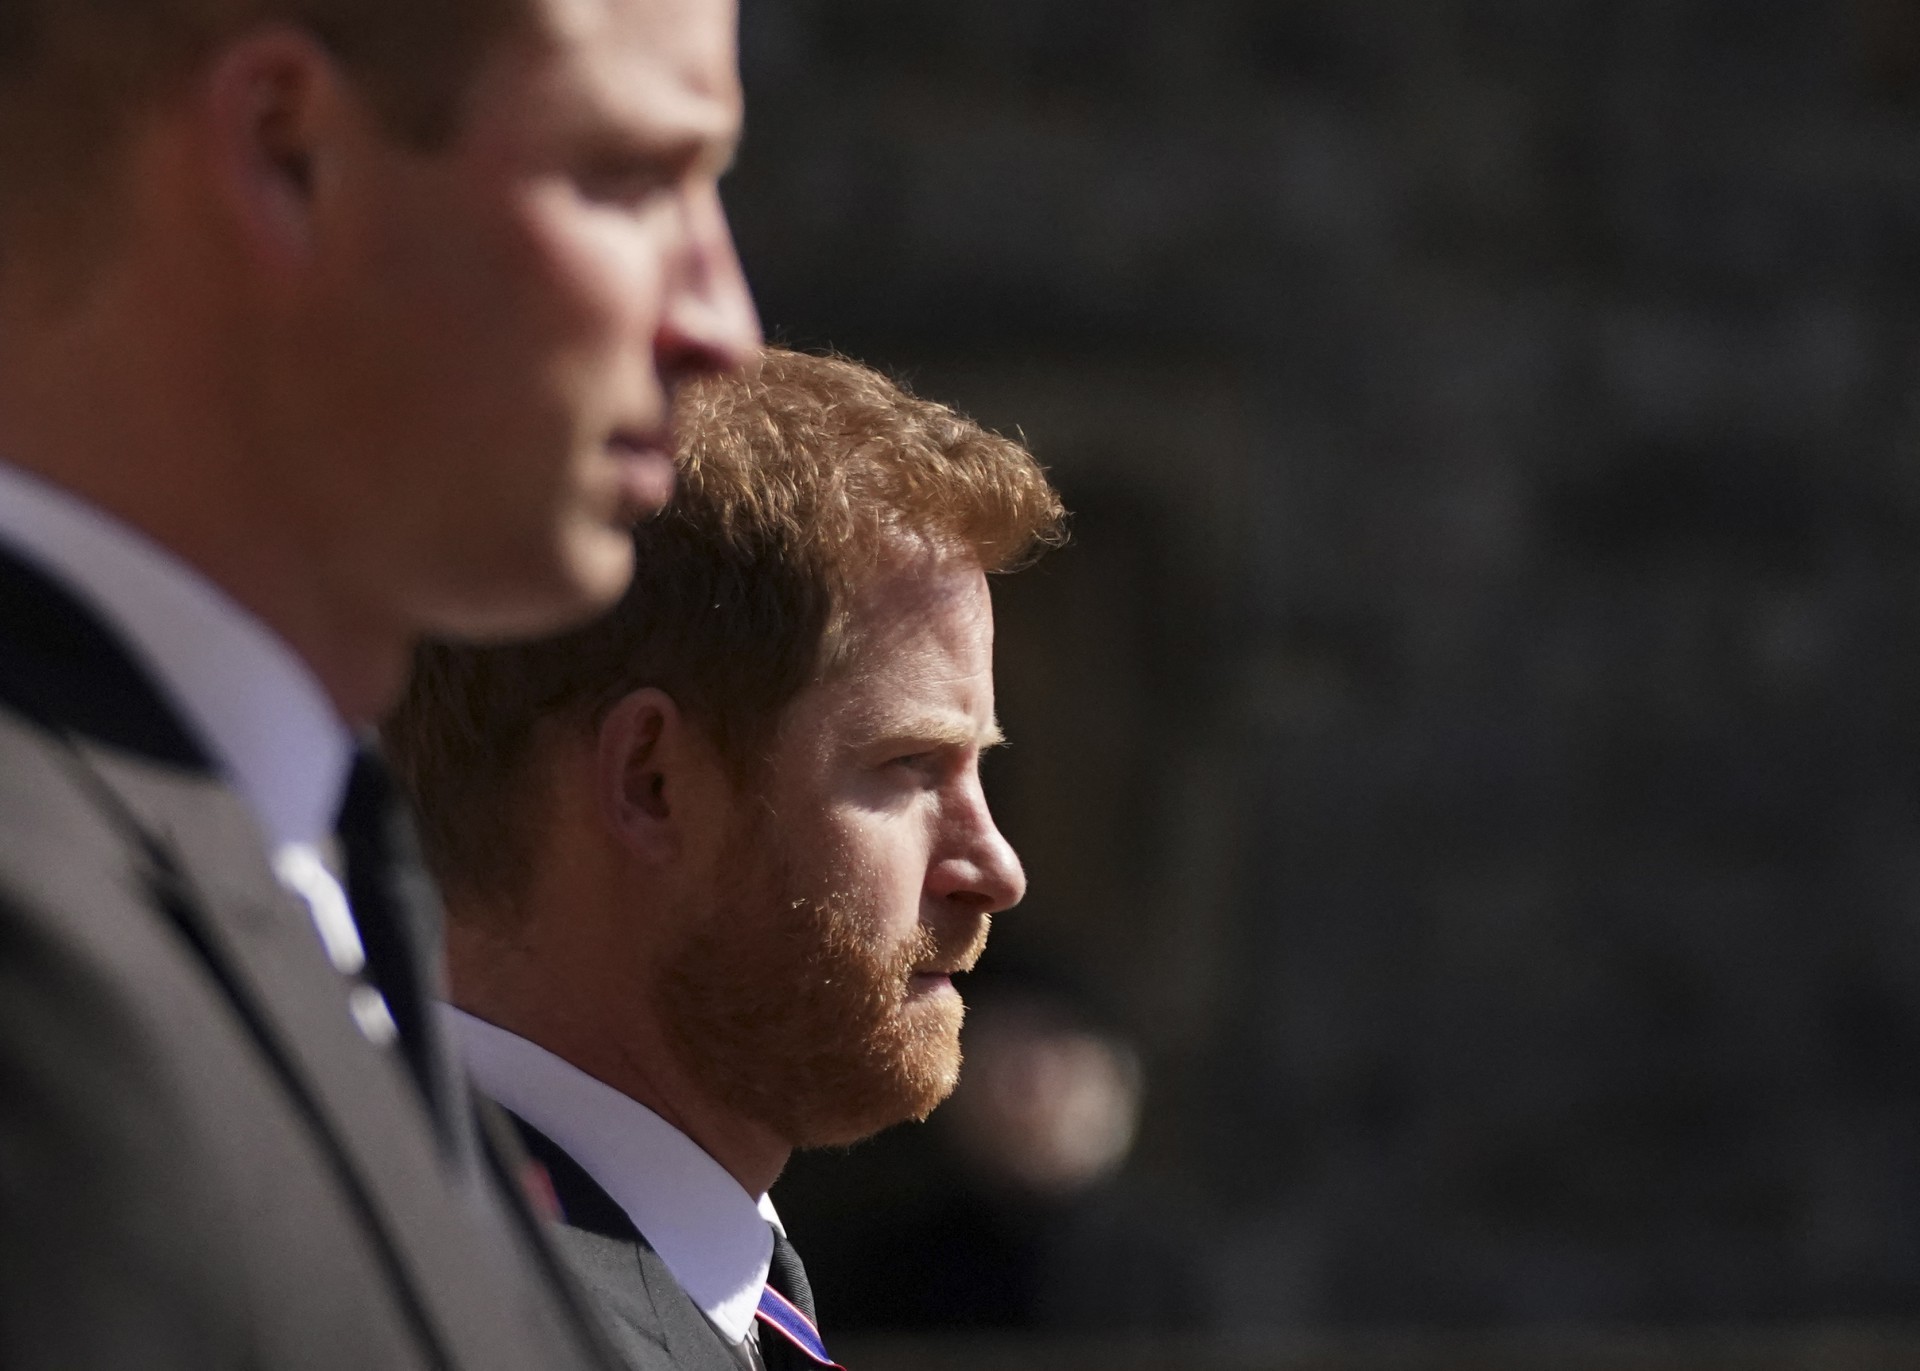 O príncipe William da Grã-Bretanha, o duque de Cambridge, Peter Phillips e o príncipe Harry da Grã-Bretanha, o duque de Sussex caminham durante a procissão fúnebre do príncipe Philip da Grã-Bretanha, duque de Edimburgo até a capela de São Jorge no Castelo de Windsor em Windsor, a oeste de Londres, em 17 de abril de 2021. - Philip, que foi casado com a Rainha Elizabeth II por 73 anos, morreu em 9 de abril com 99 anos, poucas semanas após uma internação de um mês no hospital para tratamento de um problema cardíaco e uma infecção. (Foto de Victoria Jones / POOL / AFP) / (Foto: Victoria Jones / POOL / AFP)